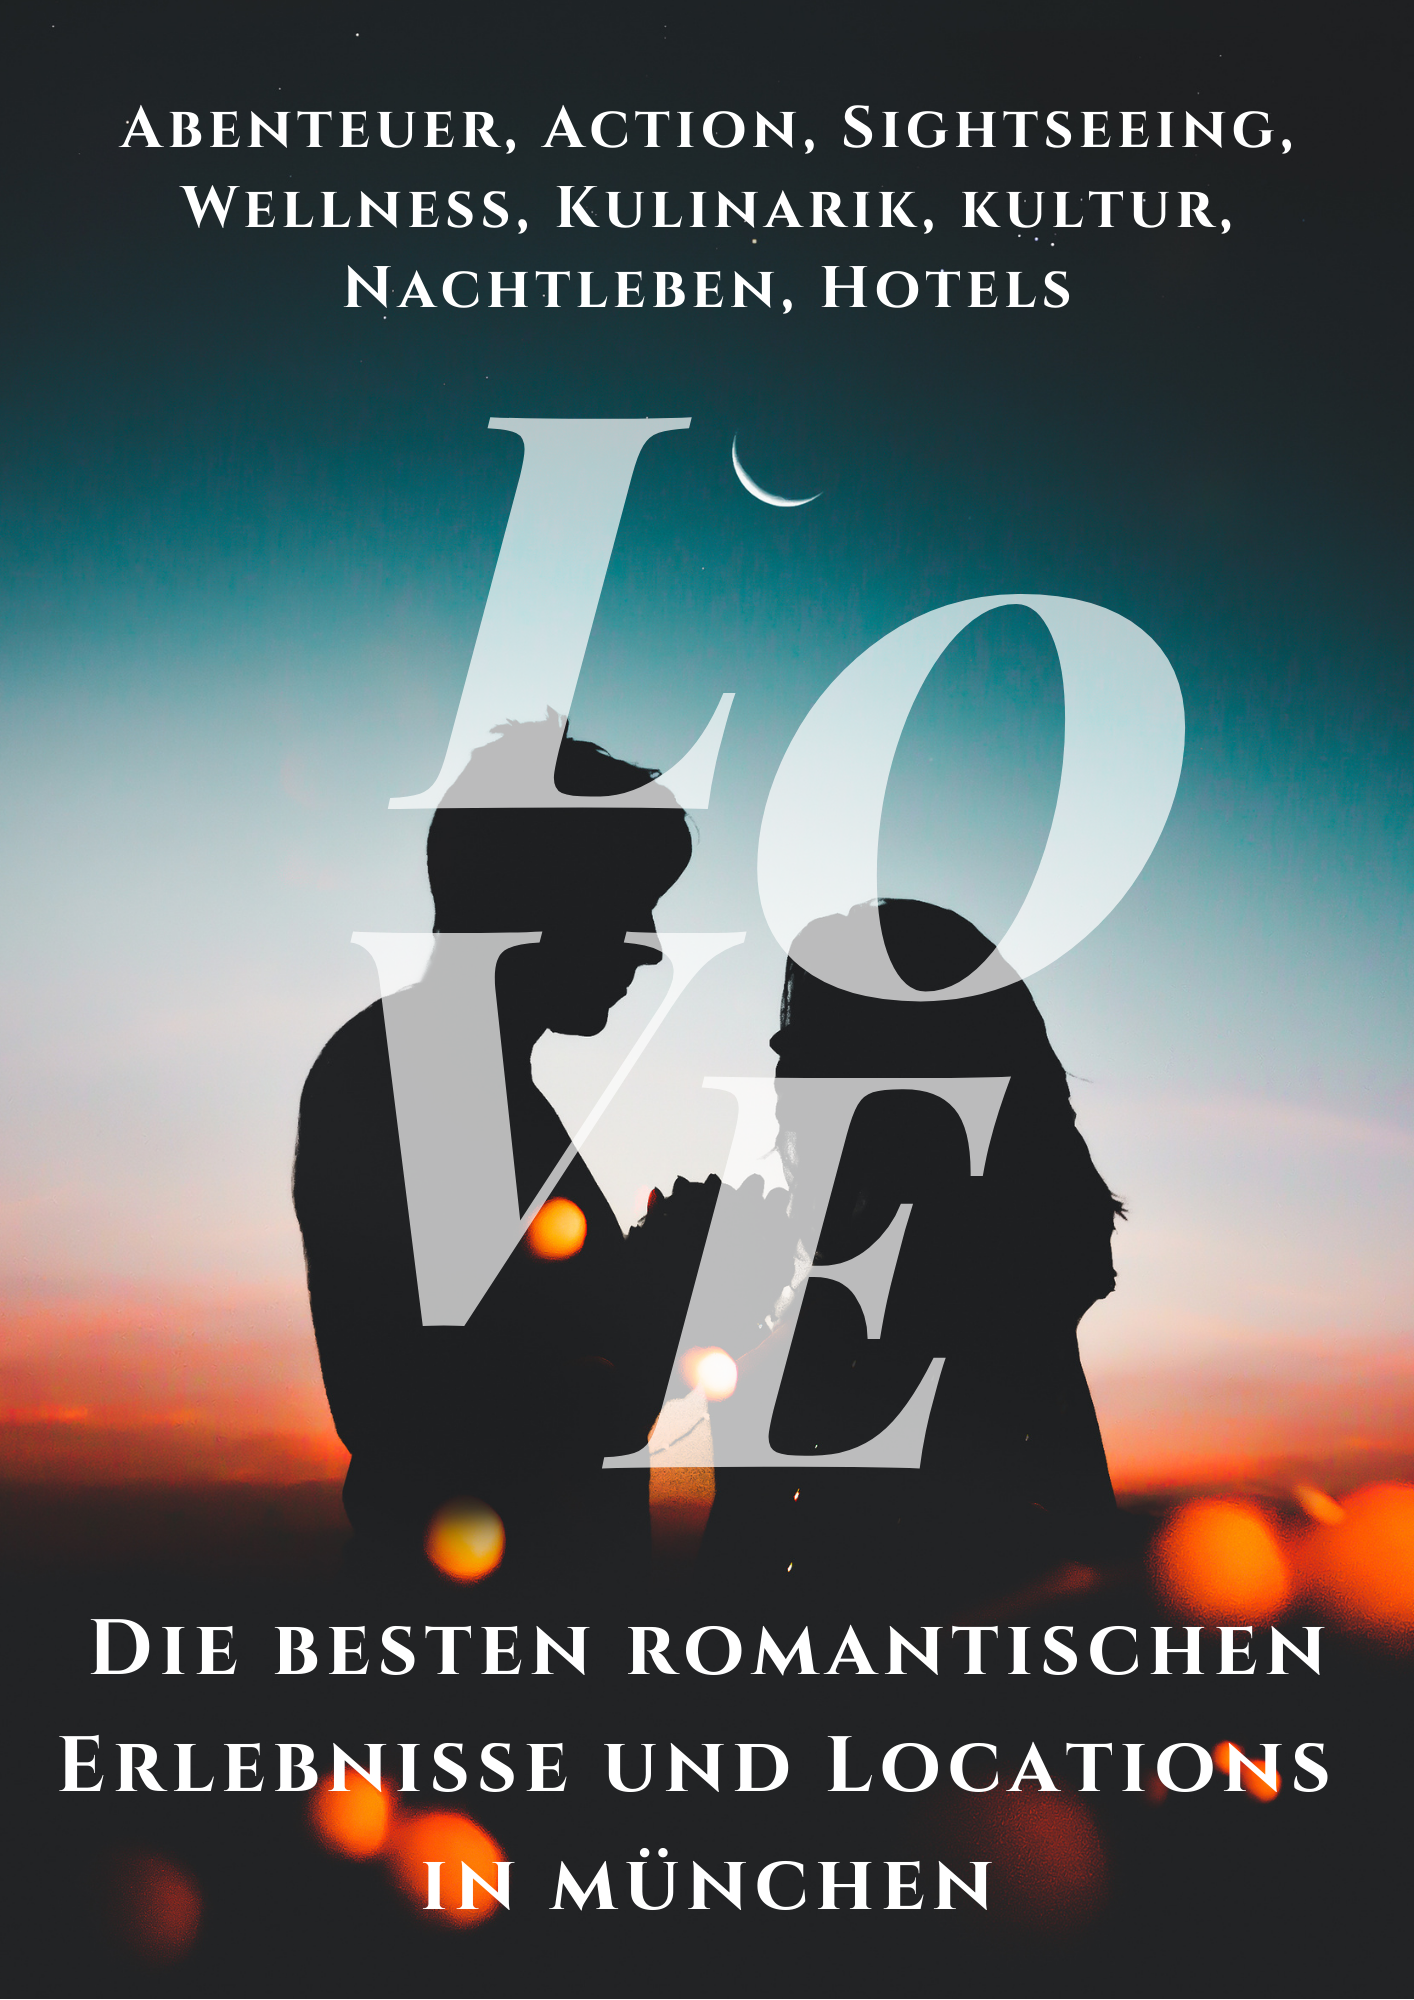 Die besten romantischen Erlebnisse und Locations in München (eBook)